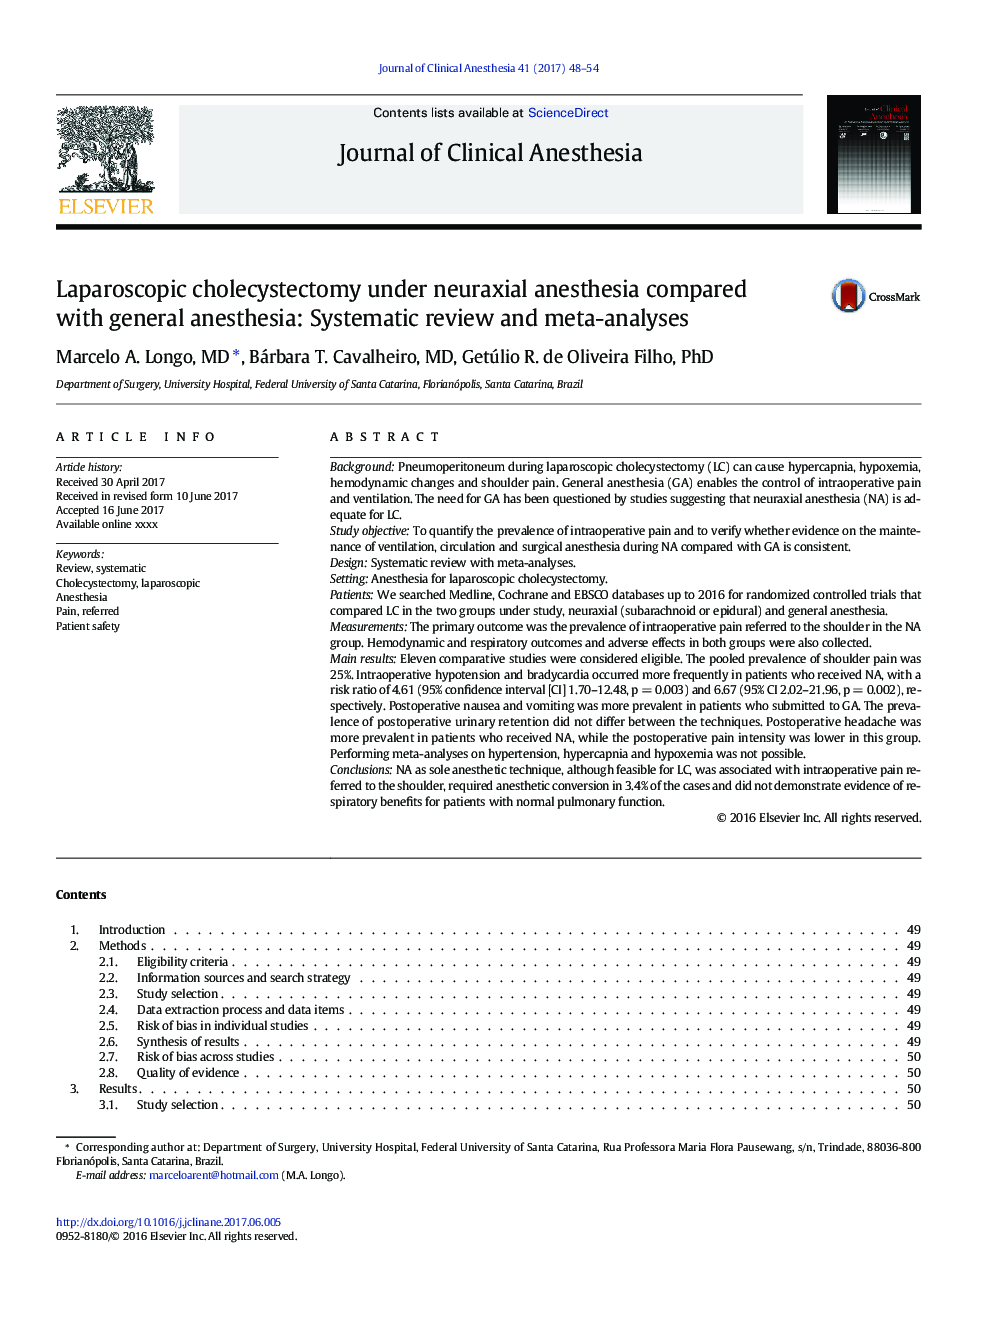 کوله سیستکتومی لاپاروسکوپی تحت بی حسی نوروزی در مقایسه با بیهوشی عمومی: بررسی سیستماتیک و متاآنالیز 